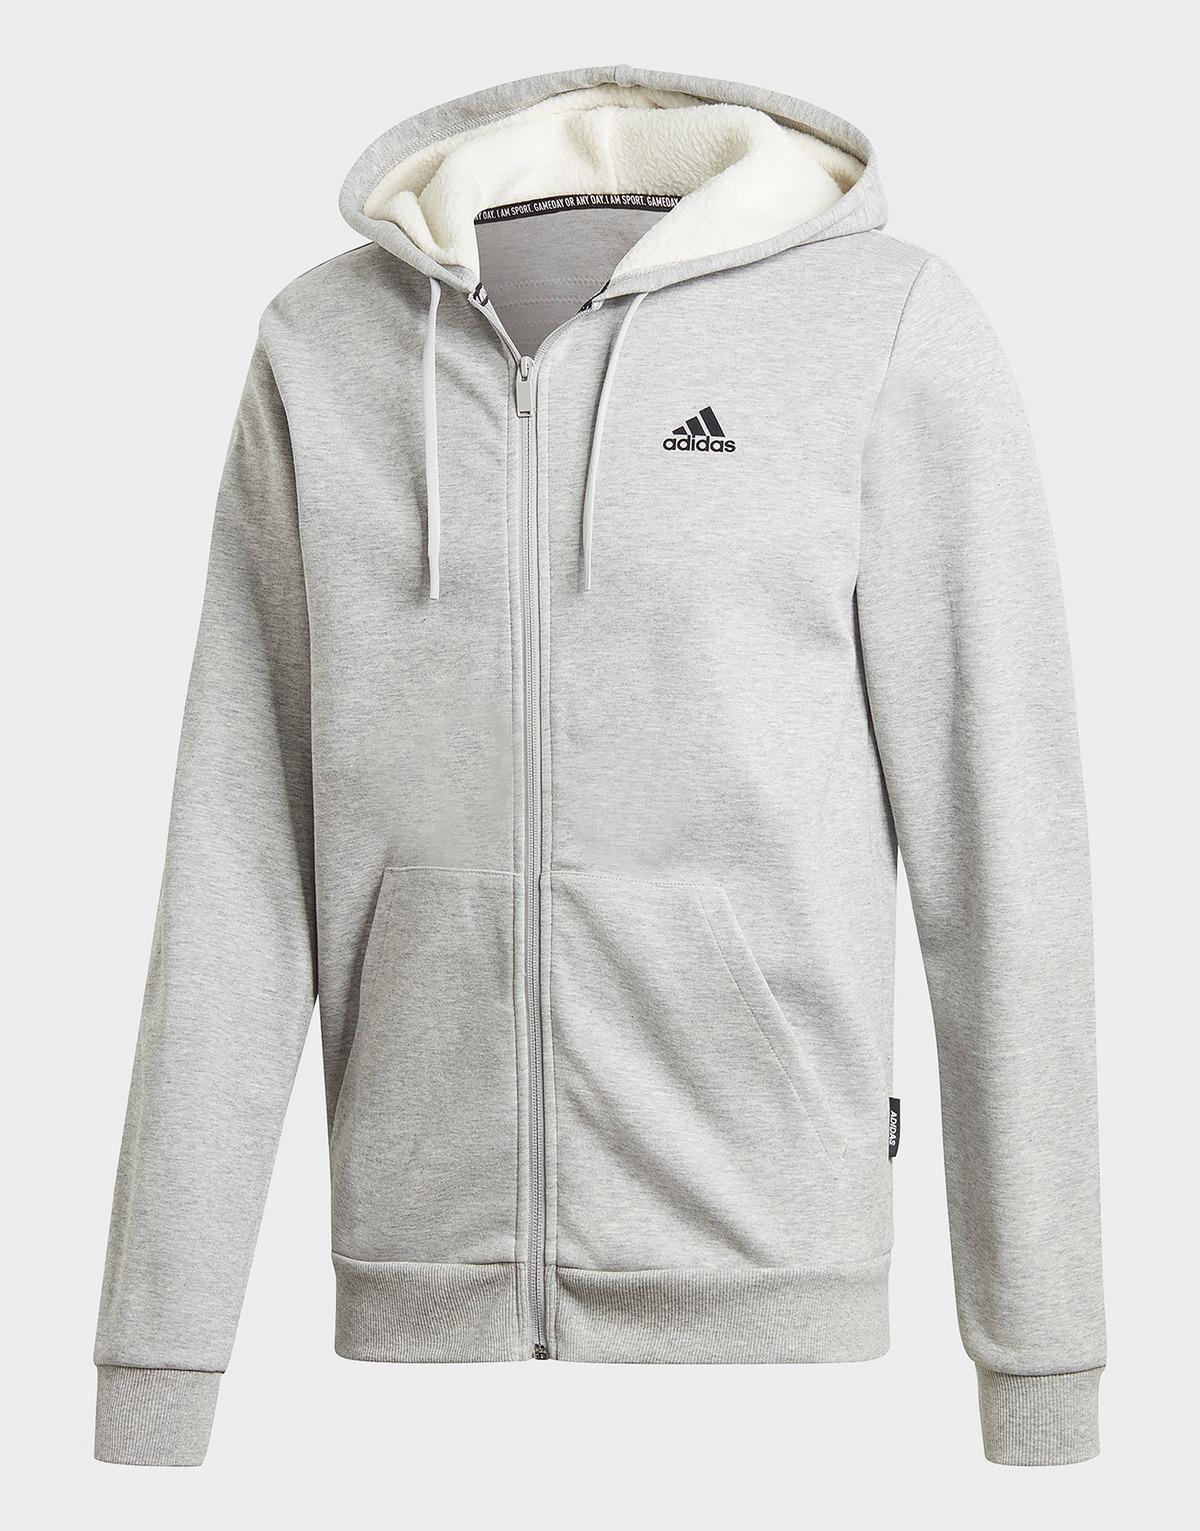 adidas Originals Fleece Winter 3-stripes Full-zip Hoodie in Gray for ...